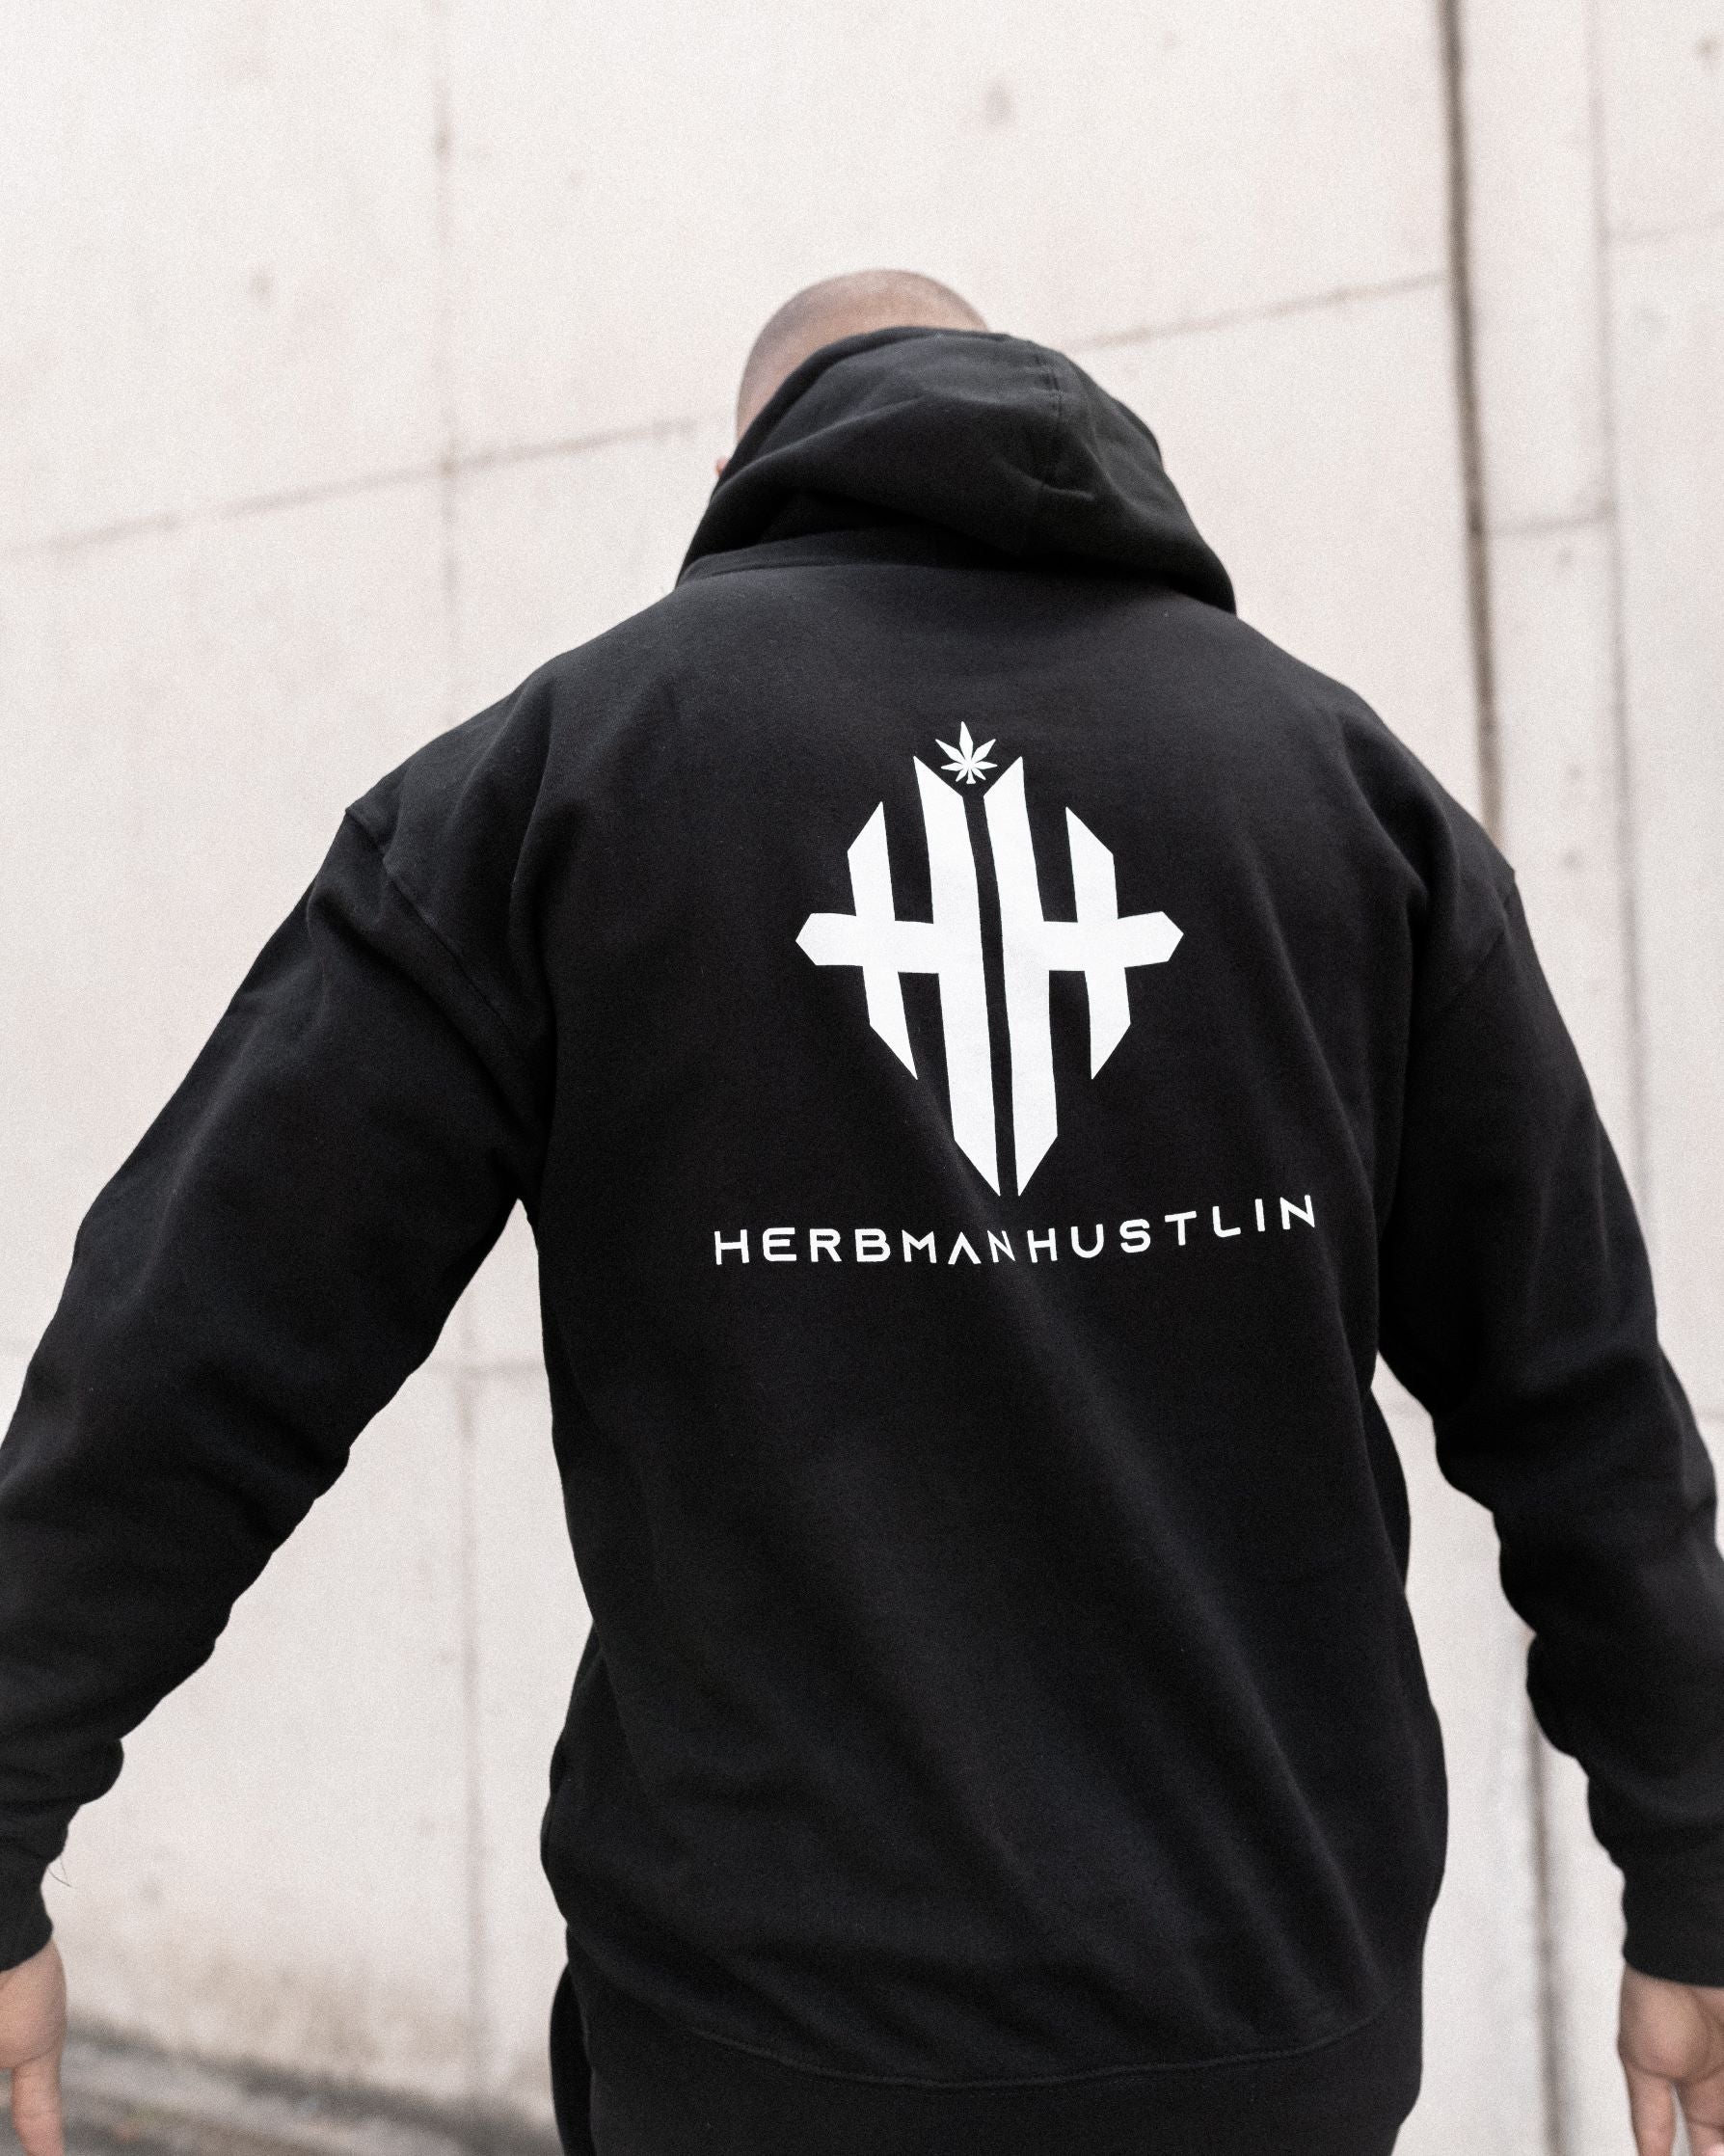 Herbman Hustlin Monogram Hoodie - Black/White - Back